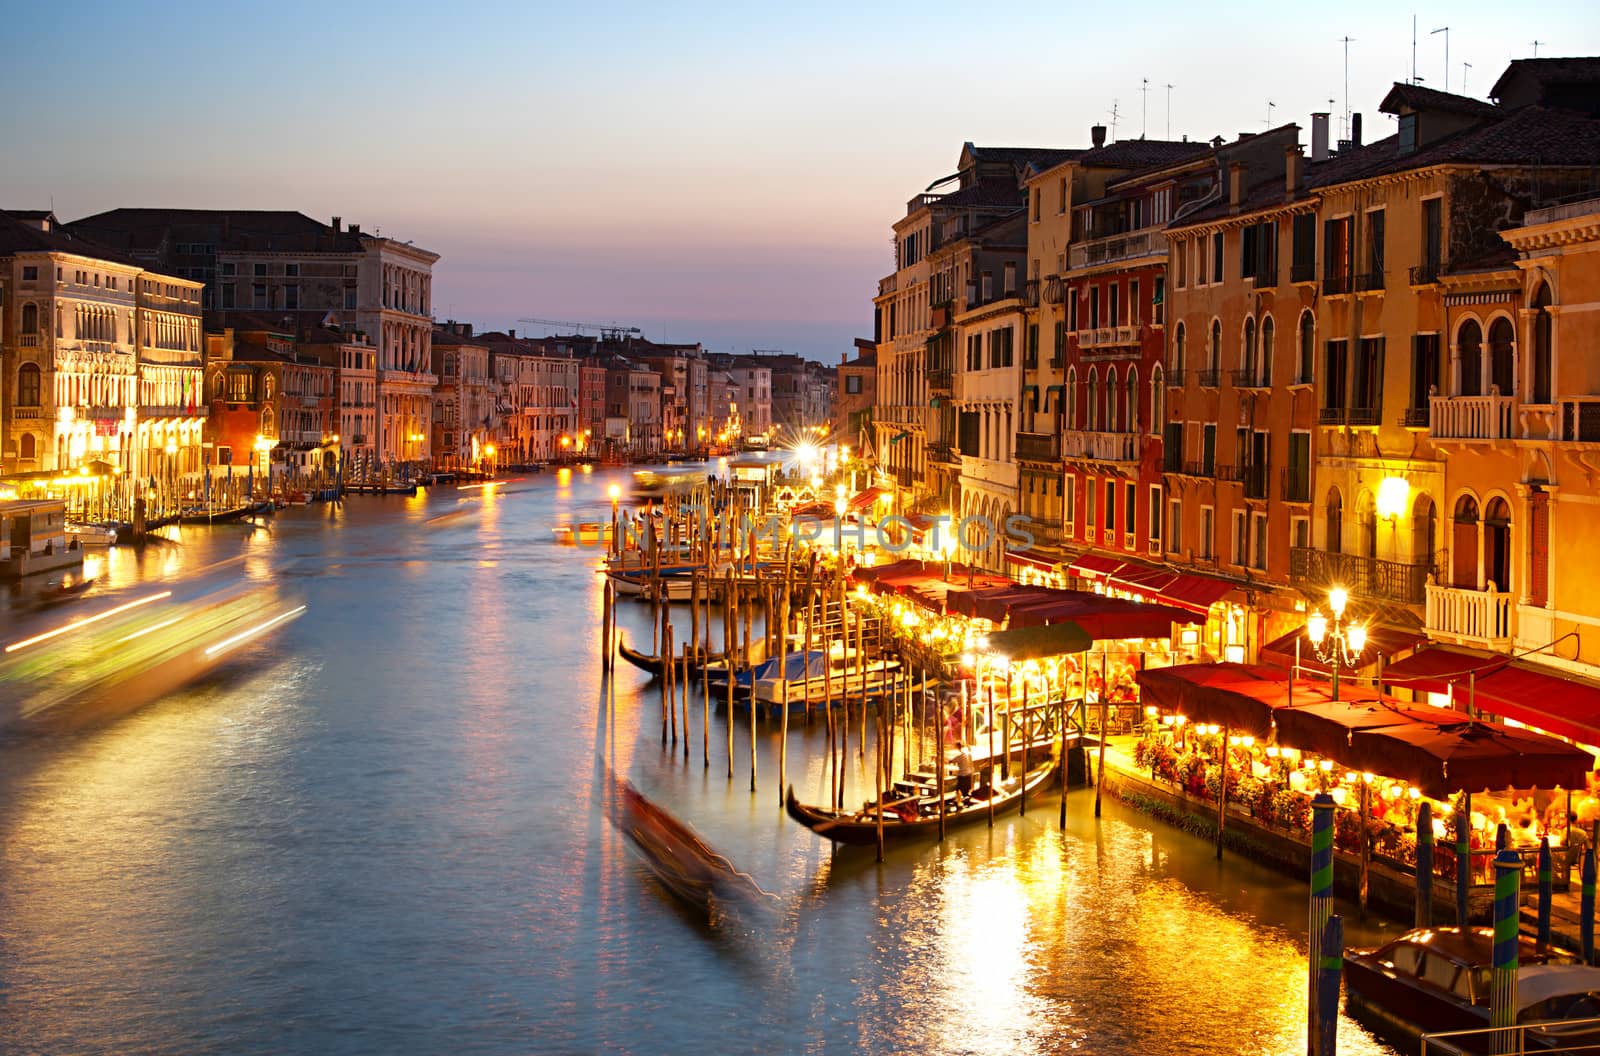 Twilight in Venice by joyfull